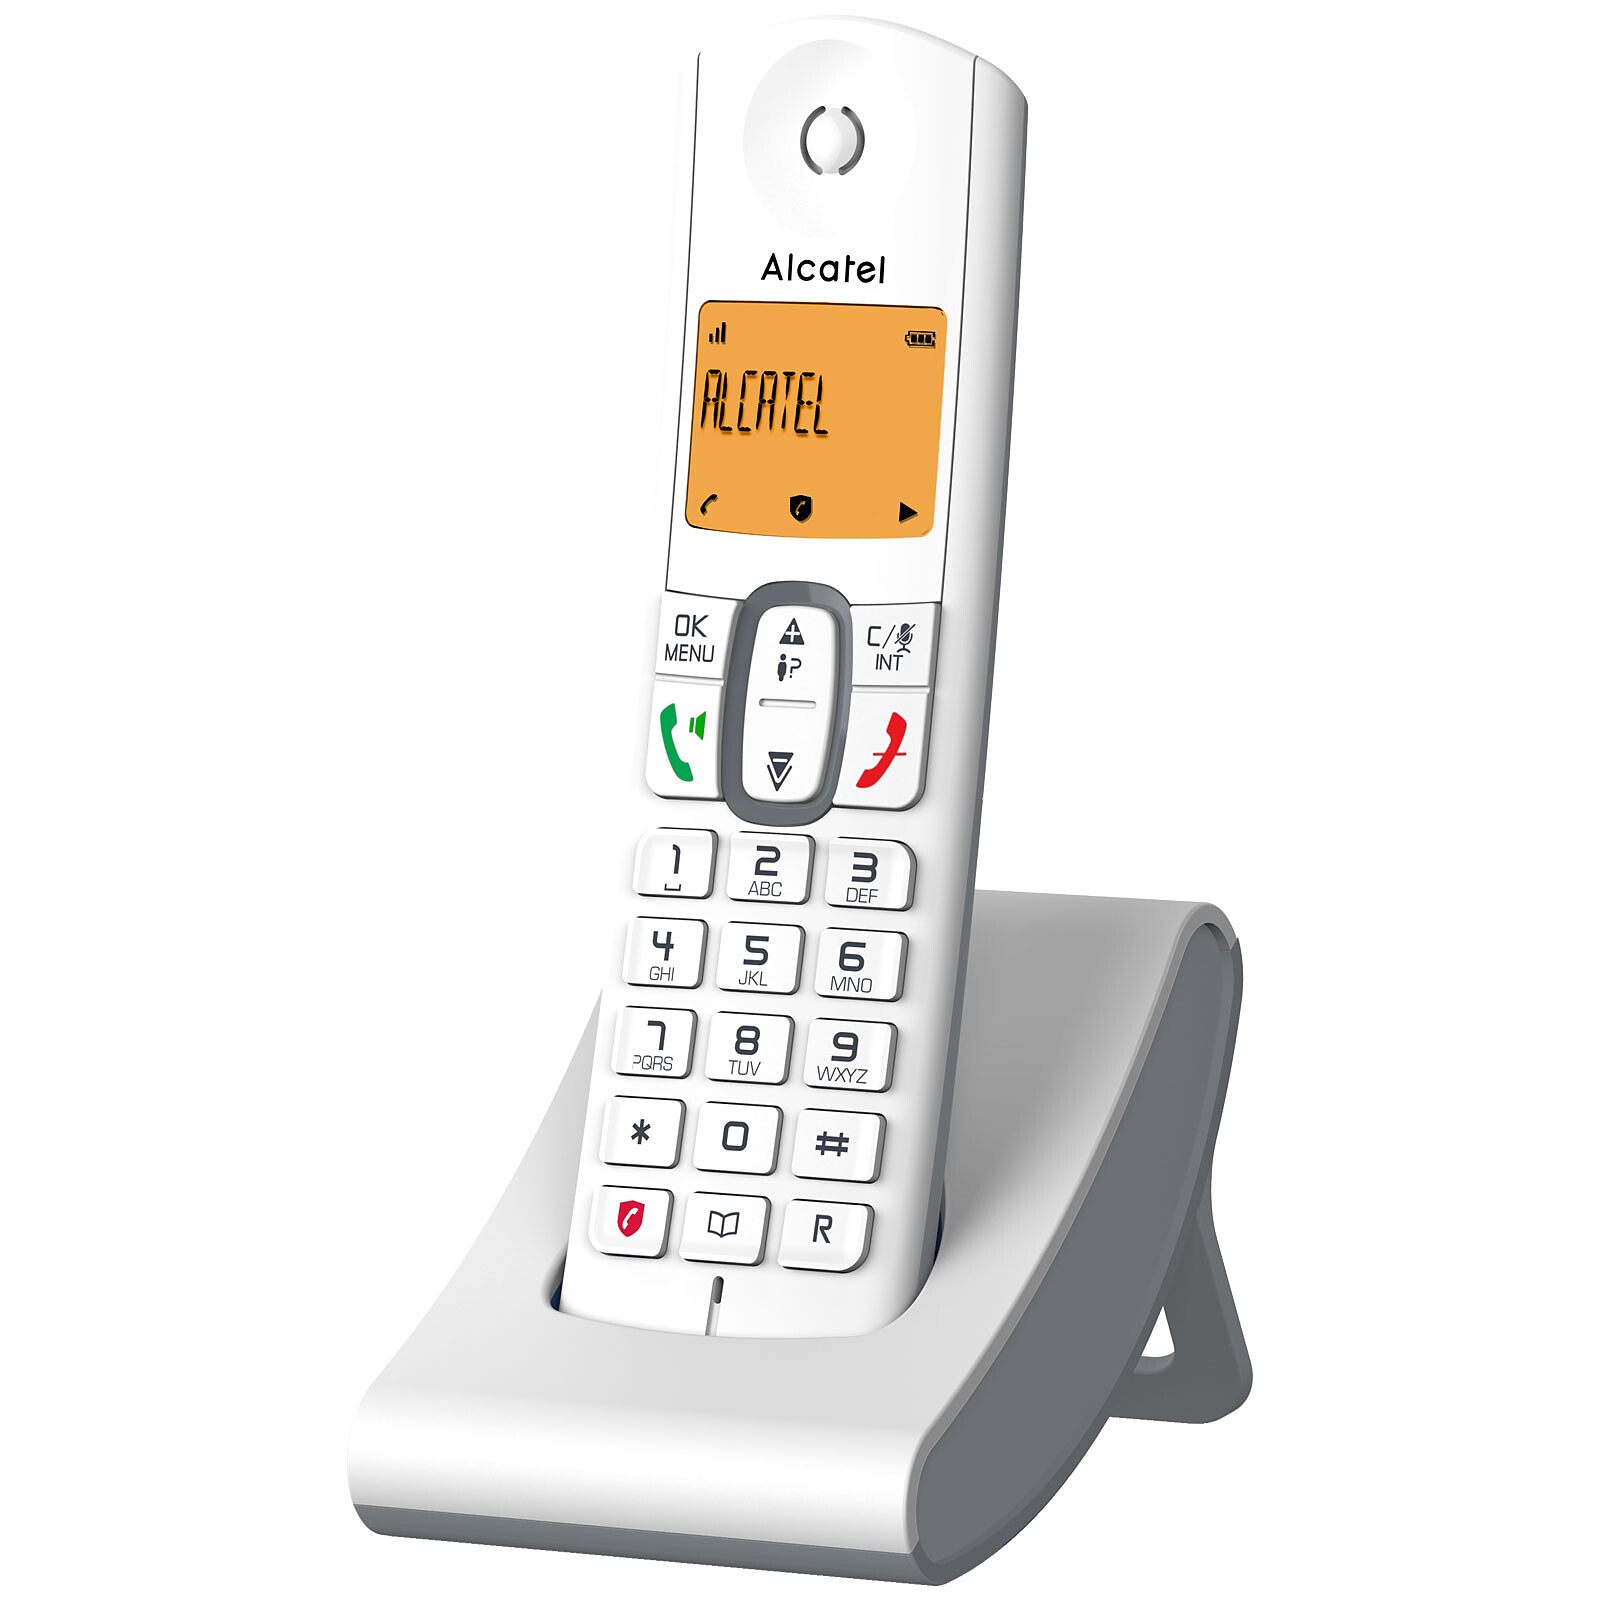 Alcatel Xl785 Teléfono Fijo Inalámbrico Blanco con Ofertas en